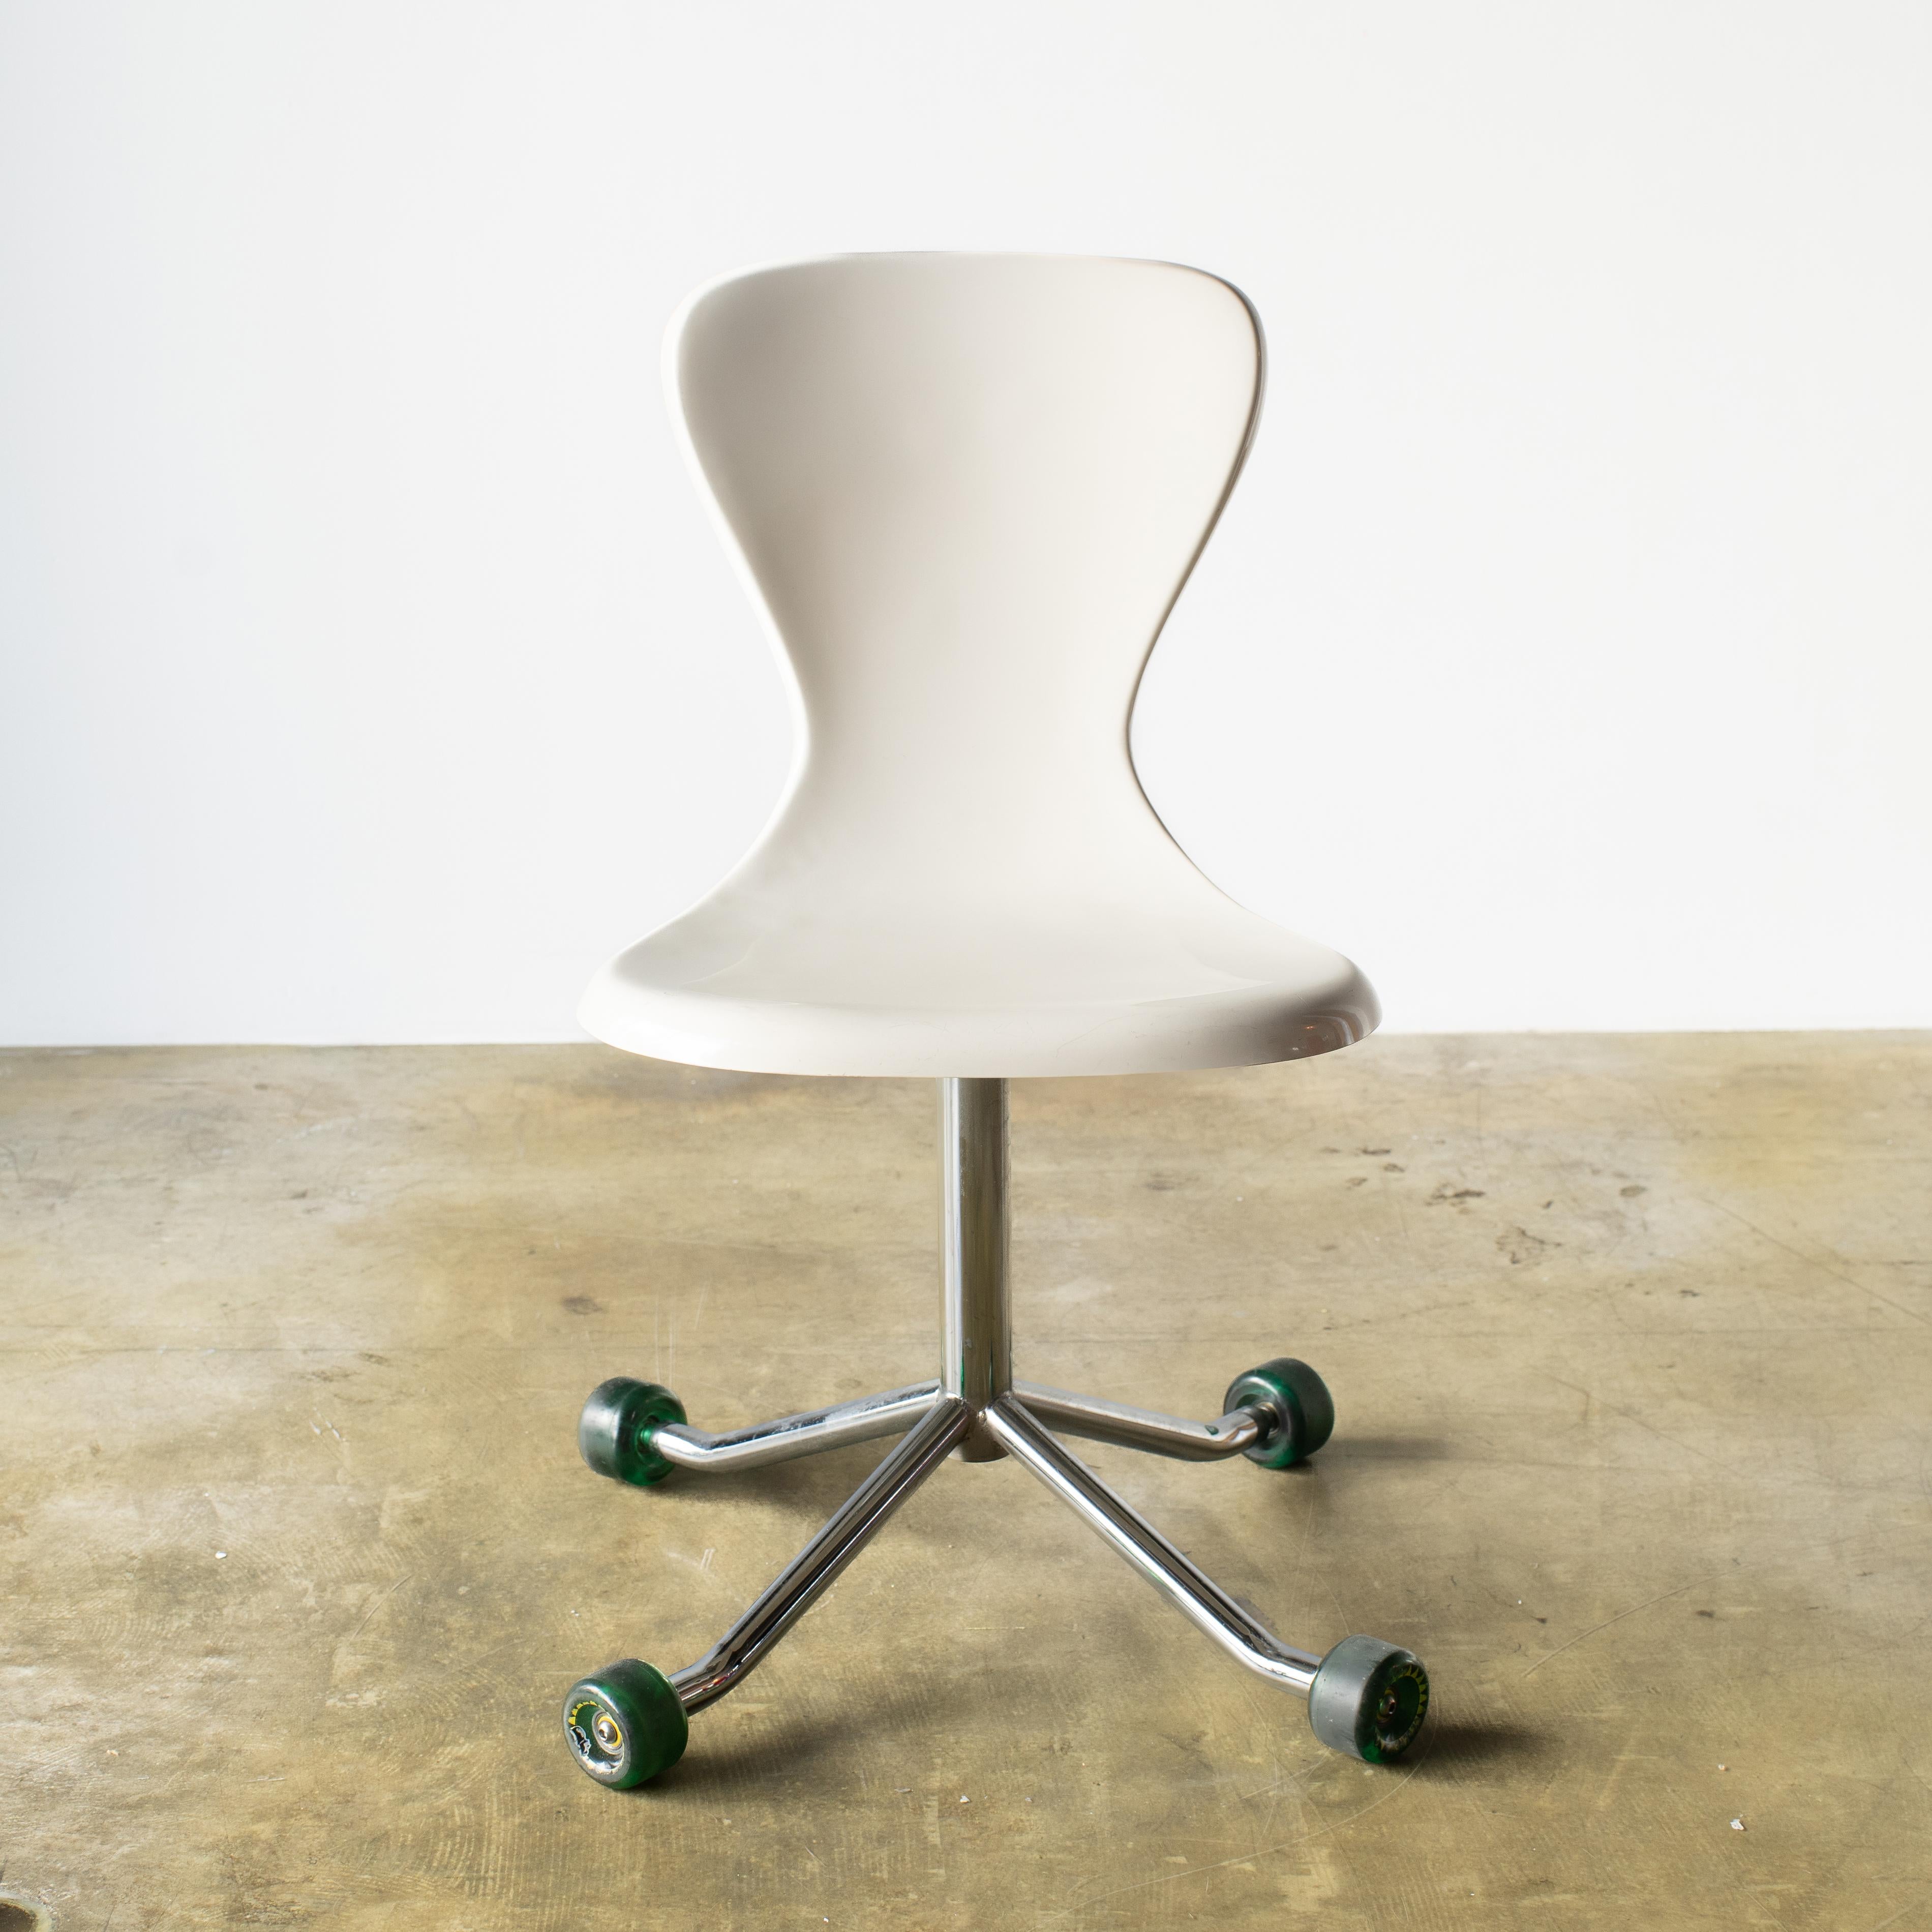 Drehbarer Schreibtischstuhl mit Skateboard-Rädern.  Es ist ein lustiger Stuhl, der sich auf vier Rädern drehen kann.  
Das ist der Stil der Jahr-2000-Einrichtung und des Designs. Auch ein wirklich tolles Beispiel aus dieser Zeit. 
 